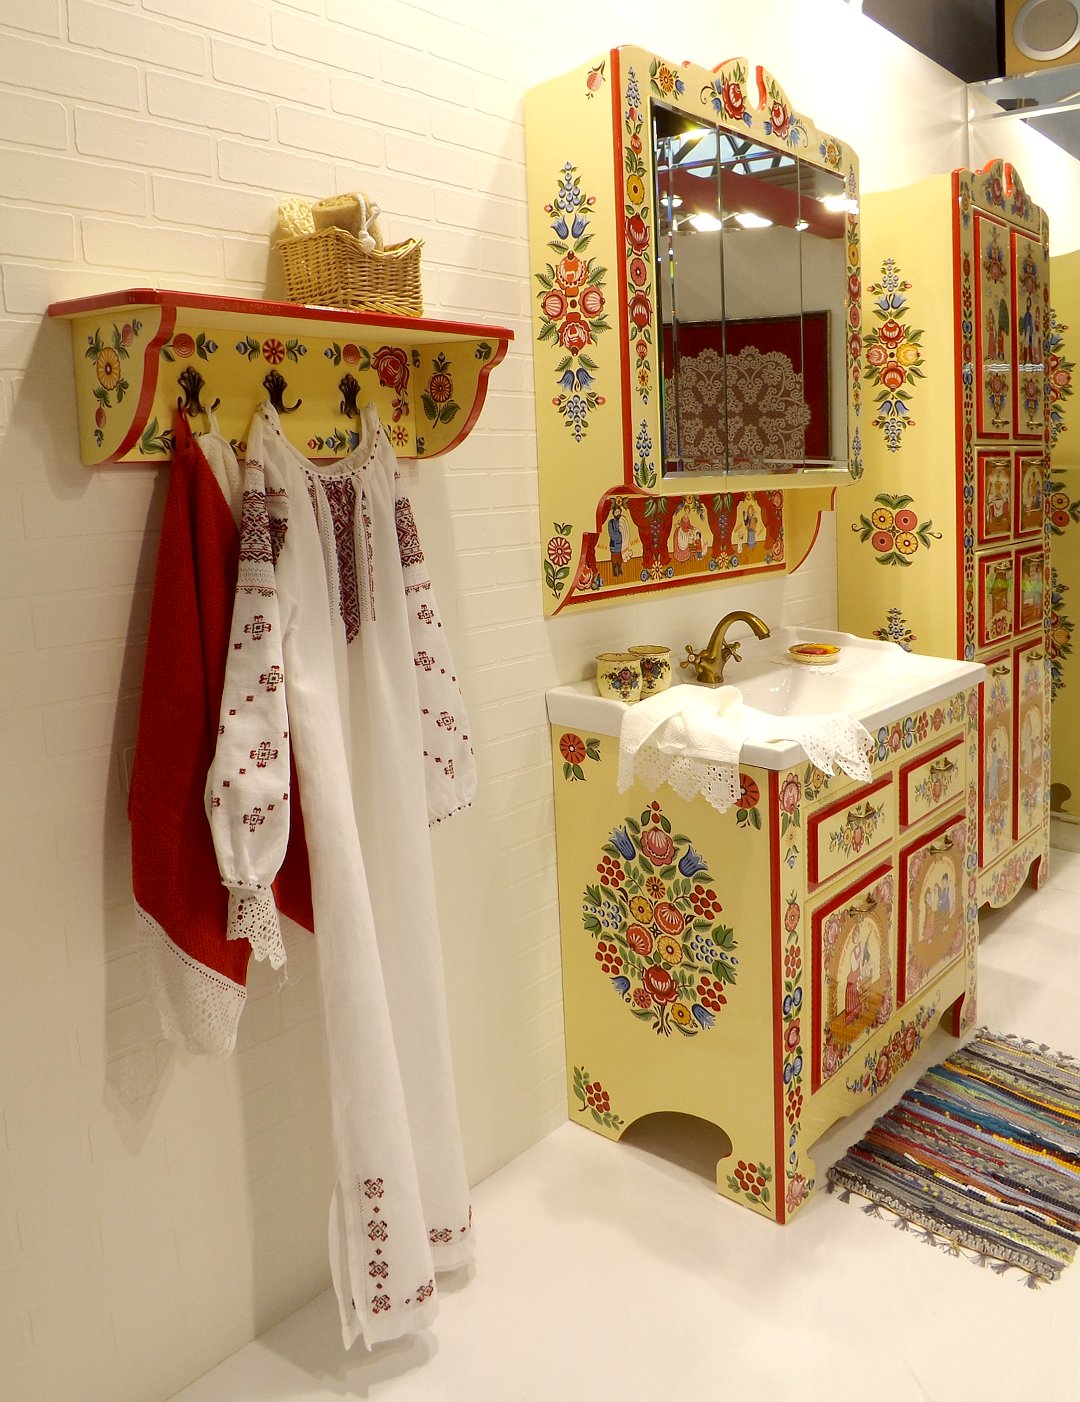 Комплект мебели и санкерамики для ванной комнаты, украшенный росписью в стиле Городецких мотивов, представленный на выставке MosBuild 2017 в Москве